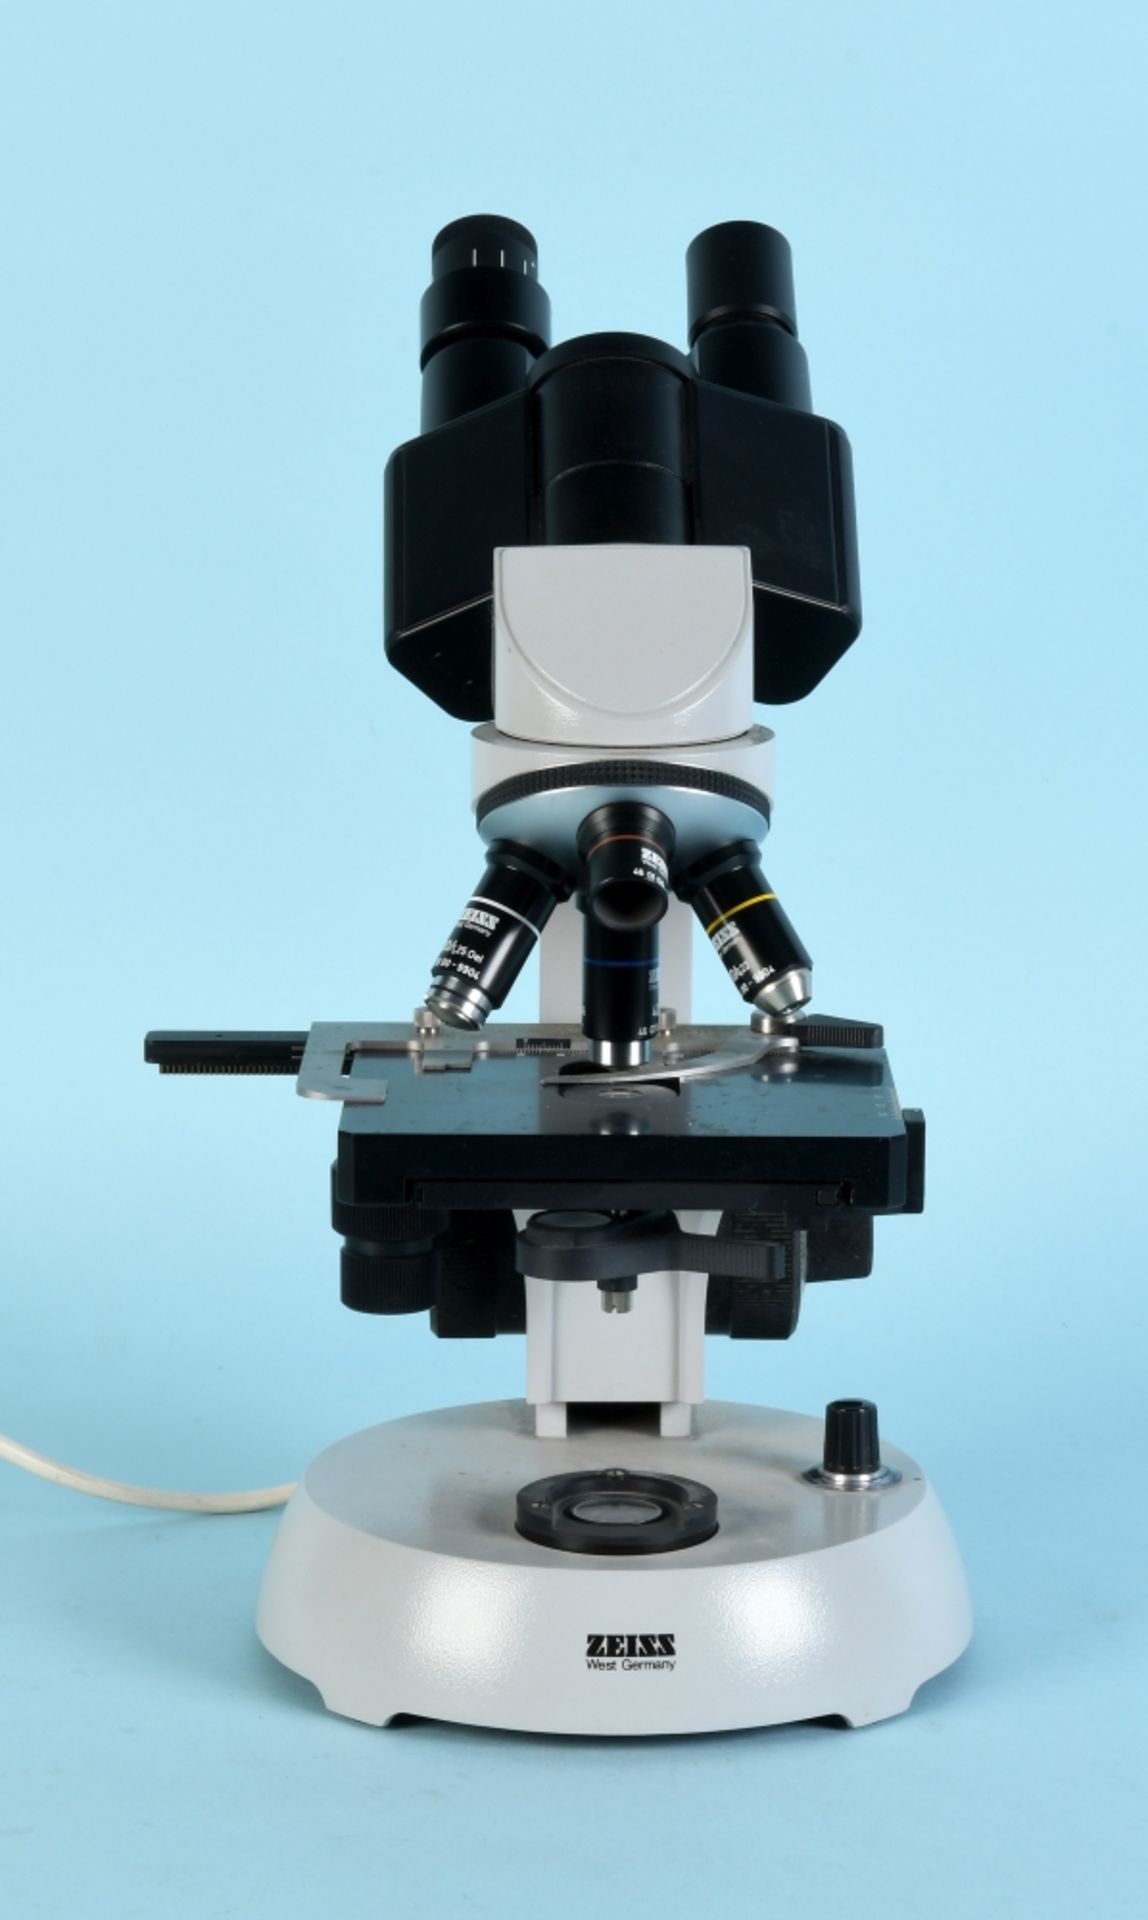 Mikroskop "Carl Zeiss, Jena", Nr. 025706